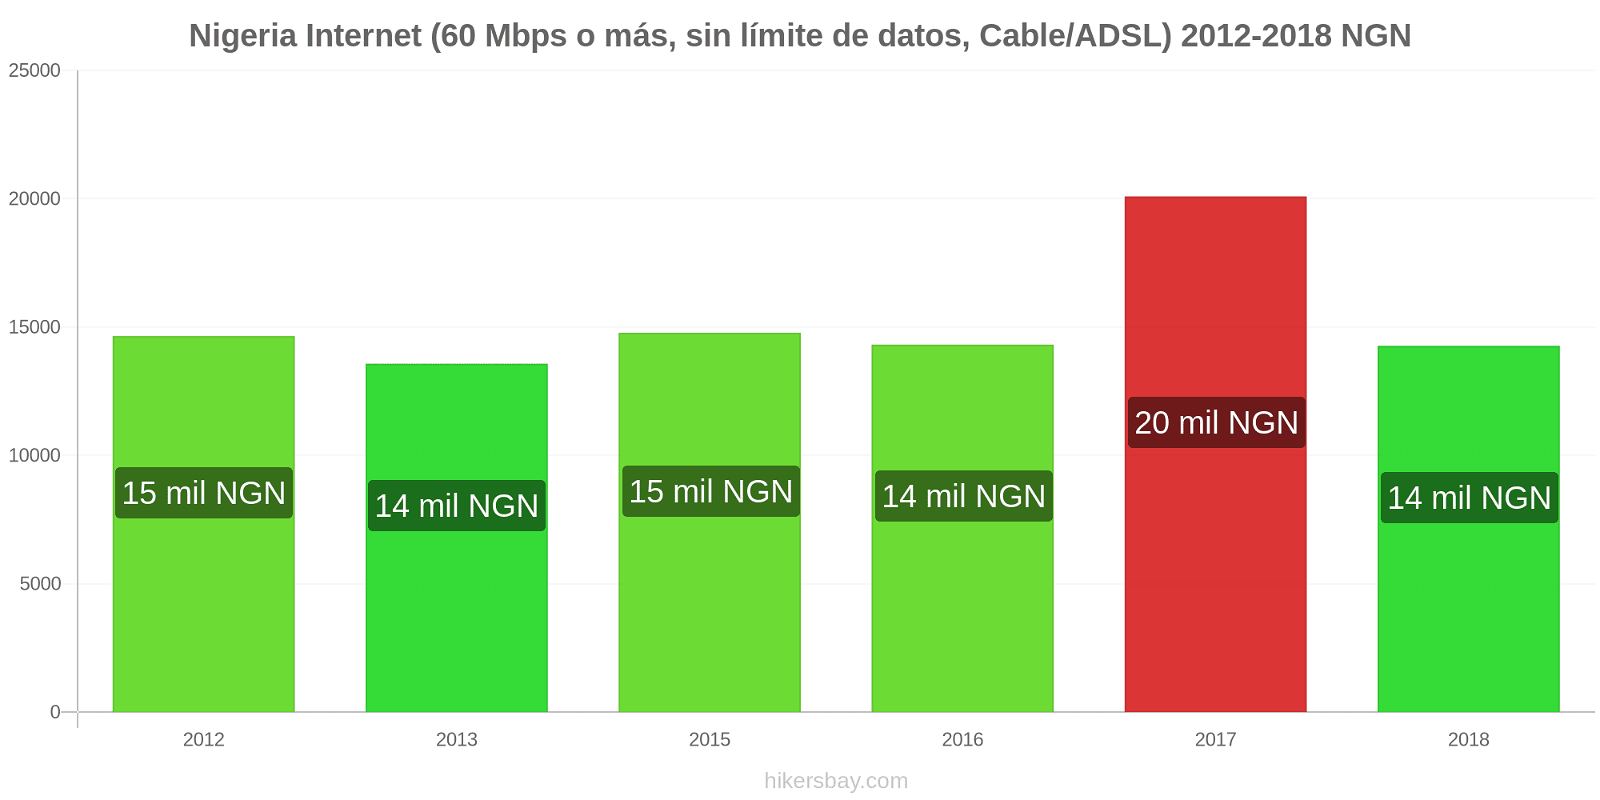 Nigeria cambios de precios Internet (60 Mbps o más, datos ilimitados, cable/ADSL) hikersbay.com